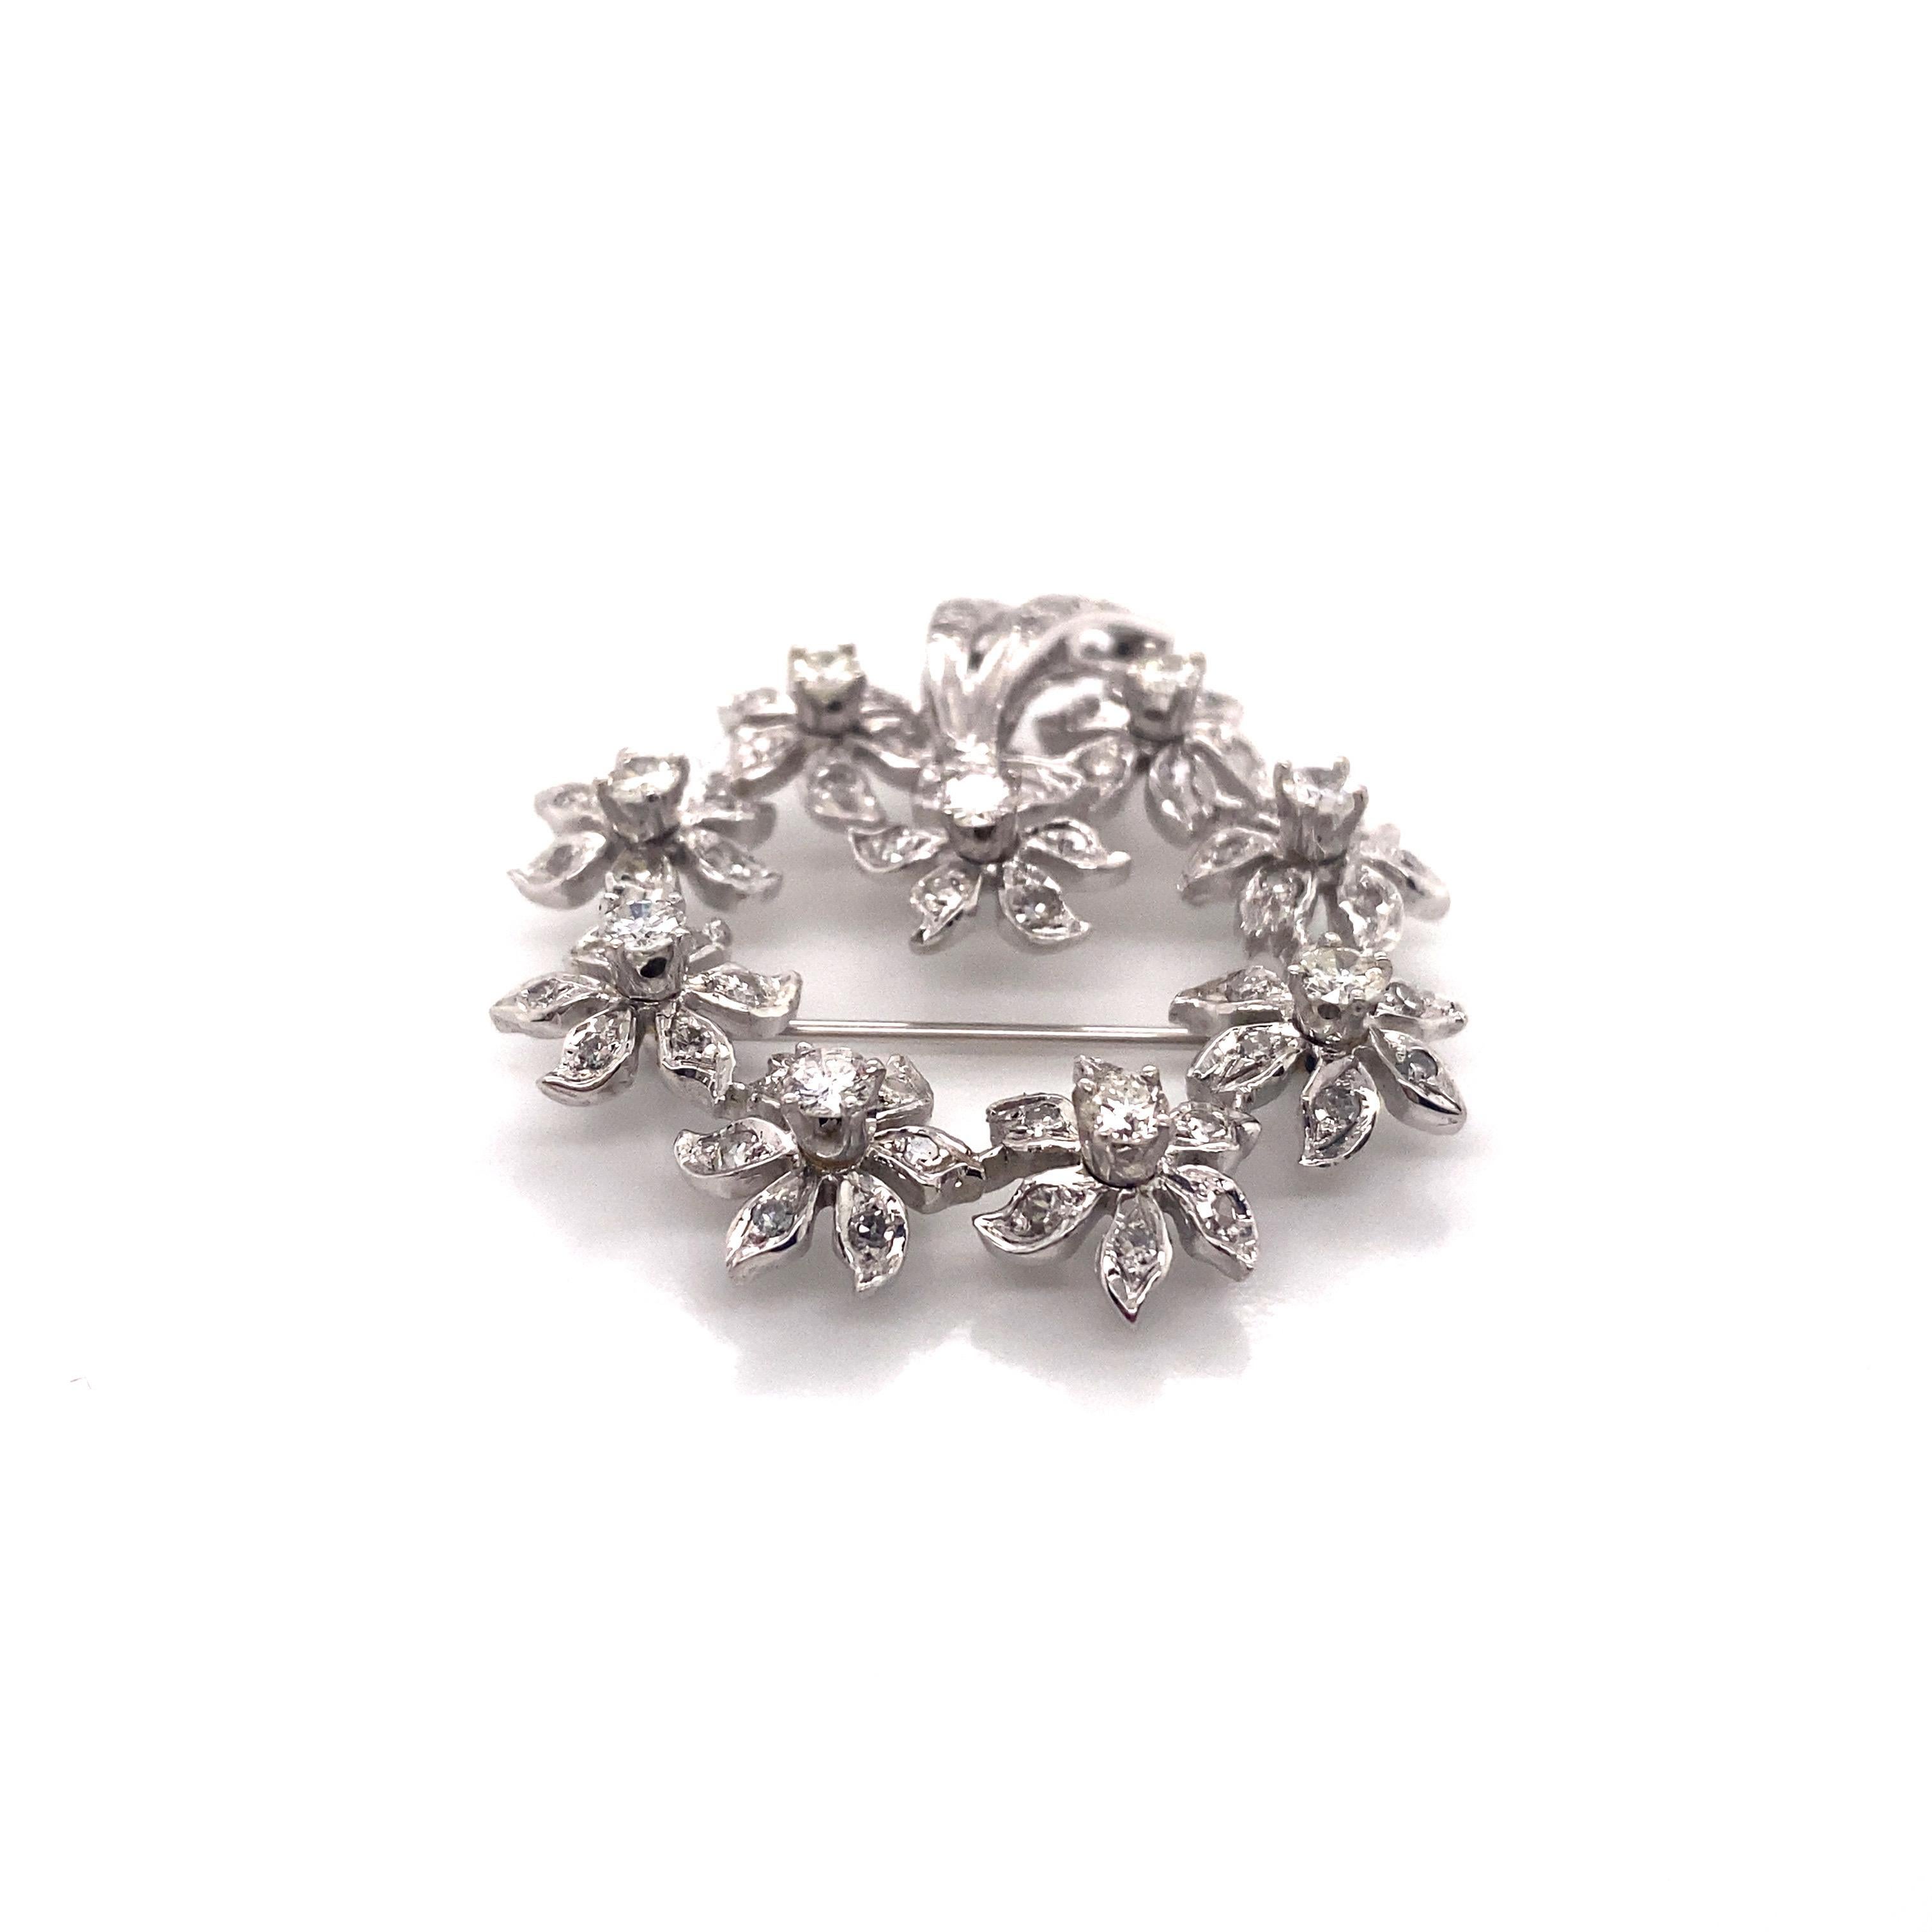 Vintage 1950's 14kw Diamond Flower Wreath Brooch Pendant 2.00ct - La broche contient 9 diamants ronds de taille brillant pesant environ .90ct poids total, et 62 diamants taille unique pesant 1.10ct supplémentaire. La qualité du diamant est de